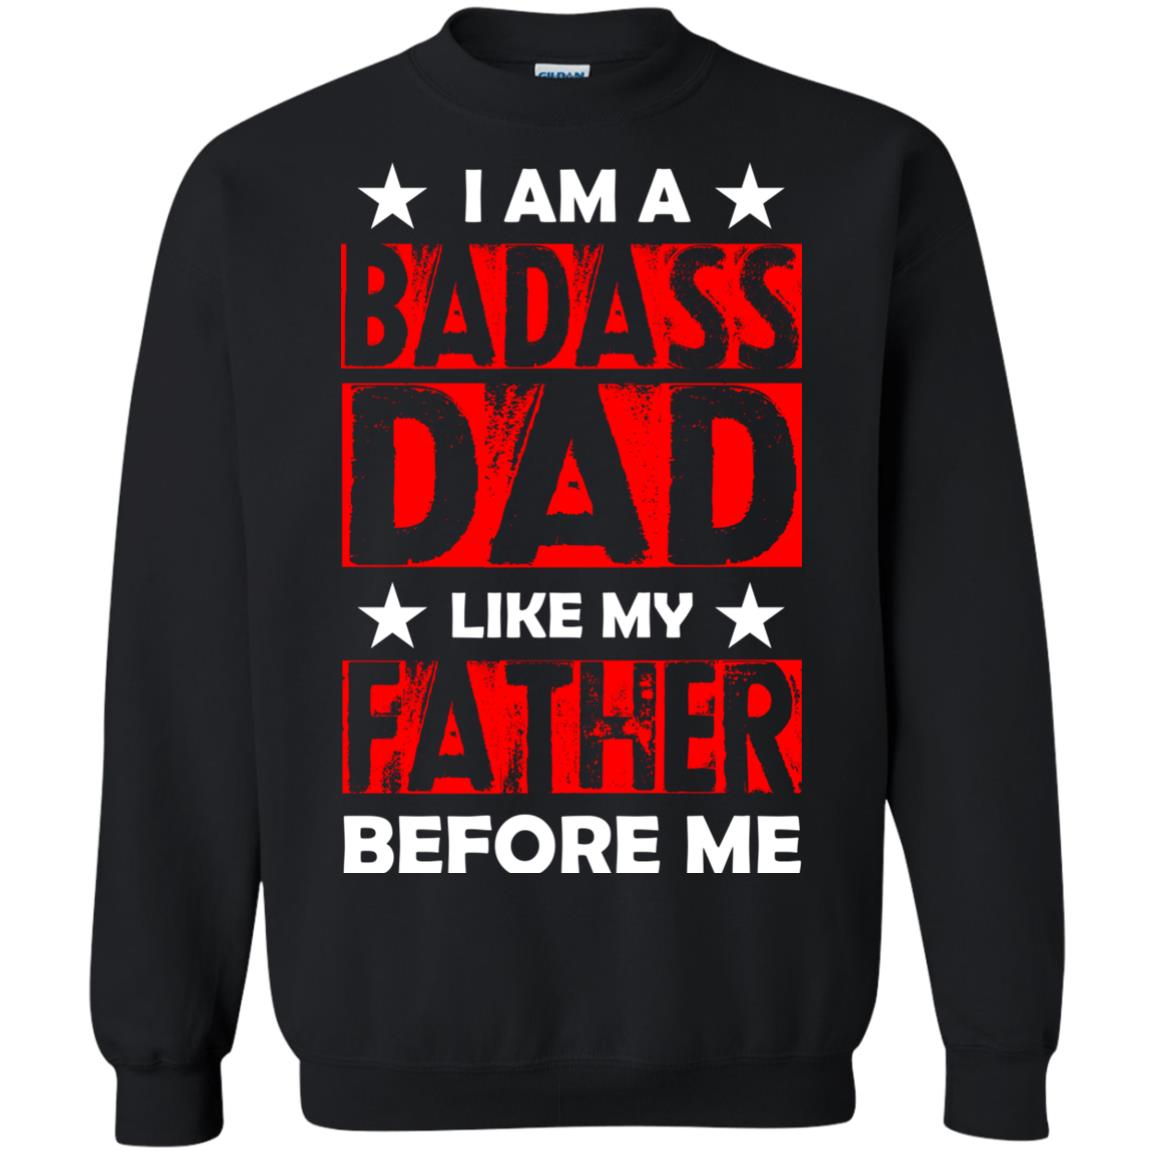 I Am A Badass Dad Like My Father Before MeG180 Gildan Crewneck Pullover Sweatshirt 8 oz.